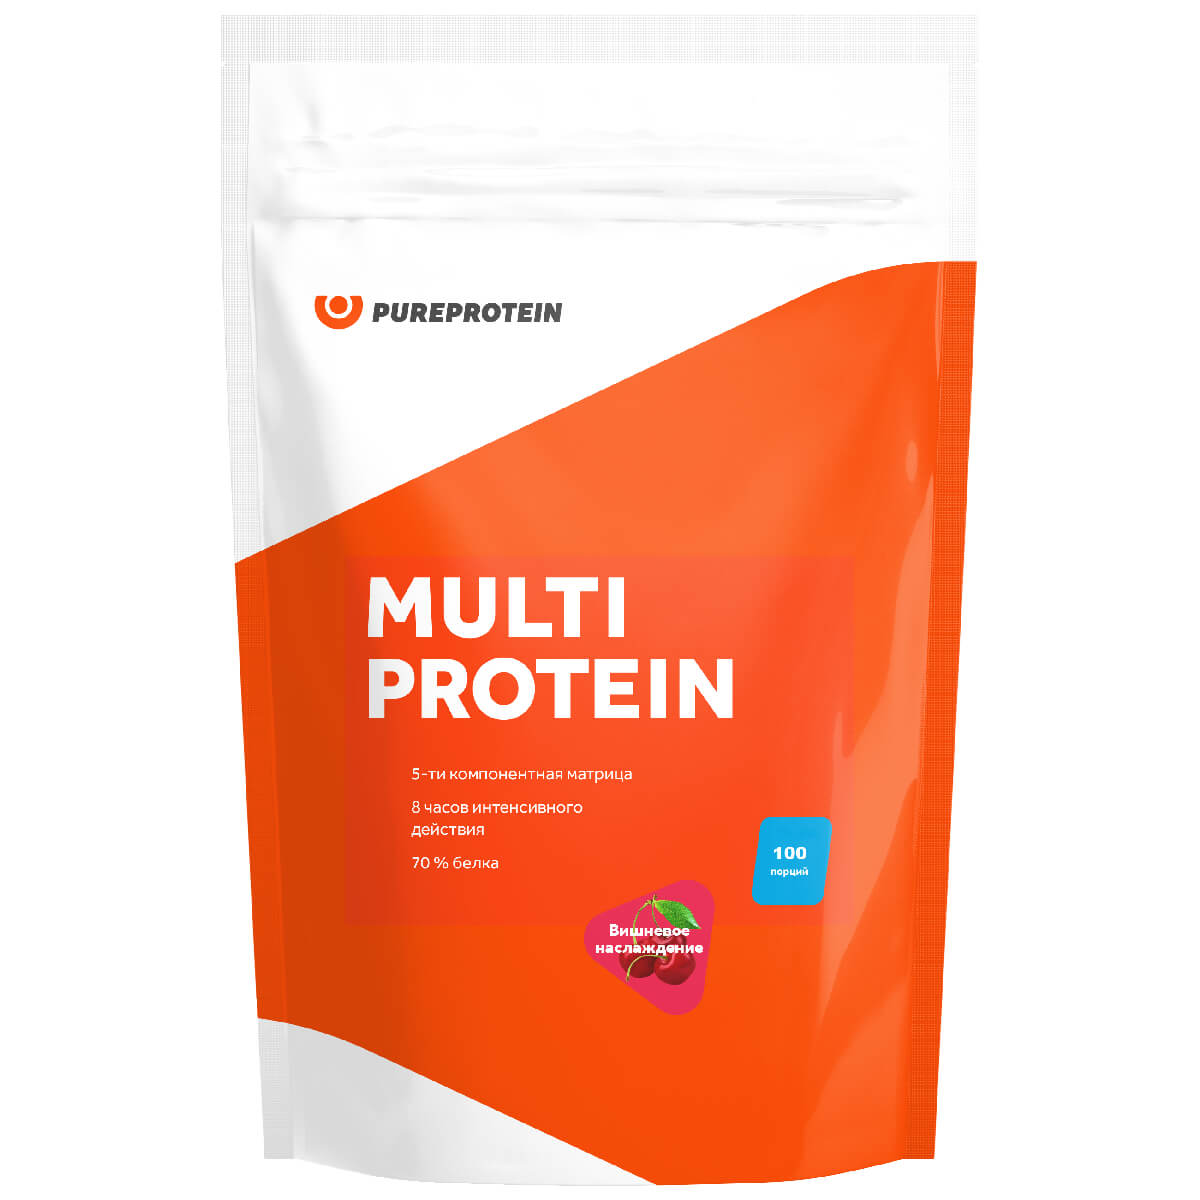 Мультикомпонентный протеин, вкус «Вишневое наслаждение», 3000г, PureProtein